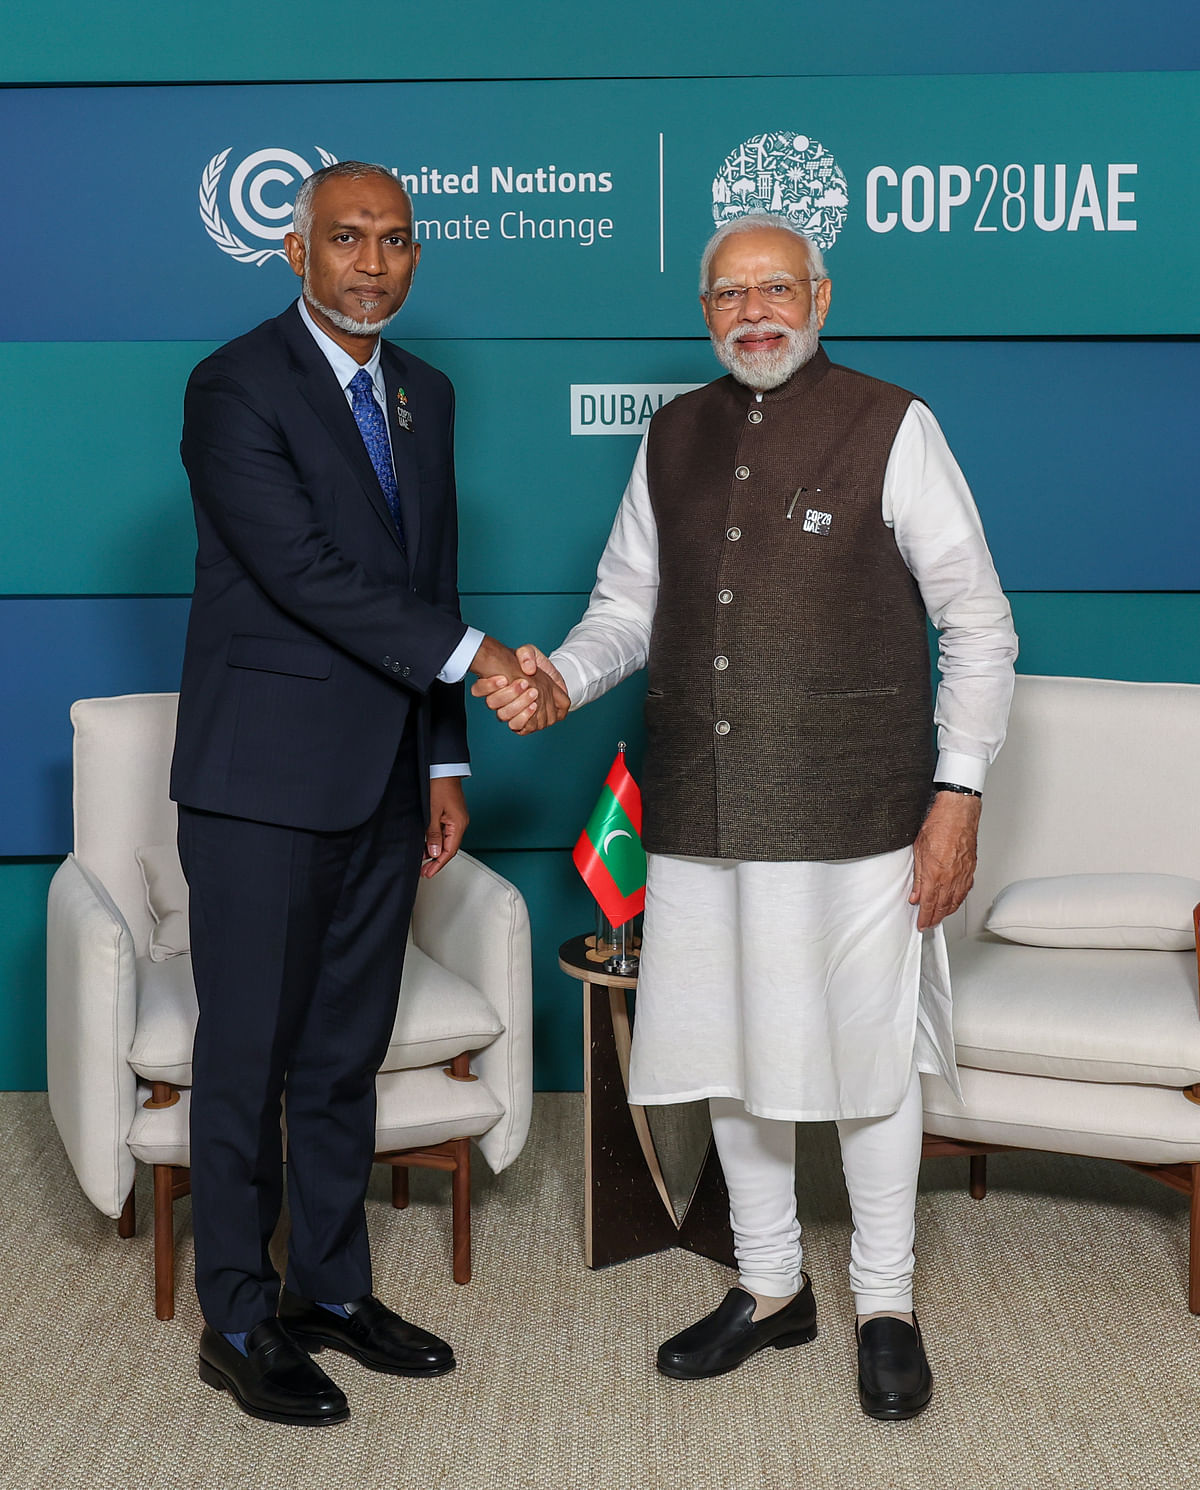 PM मोदी ने दुबई में COP28 जलवायु बैठक के इतर हर्जोग से मुलाकात की और हमास के साथ चल रहे संघर्ष पर चर्चा की. 